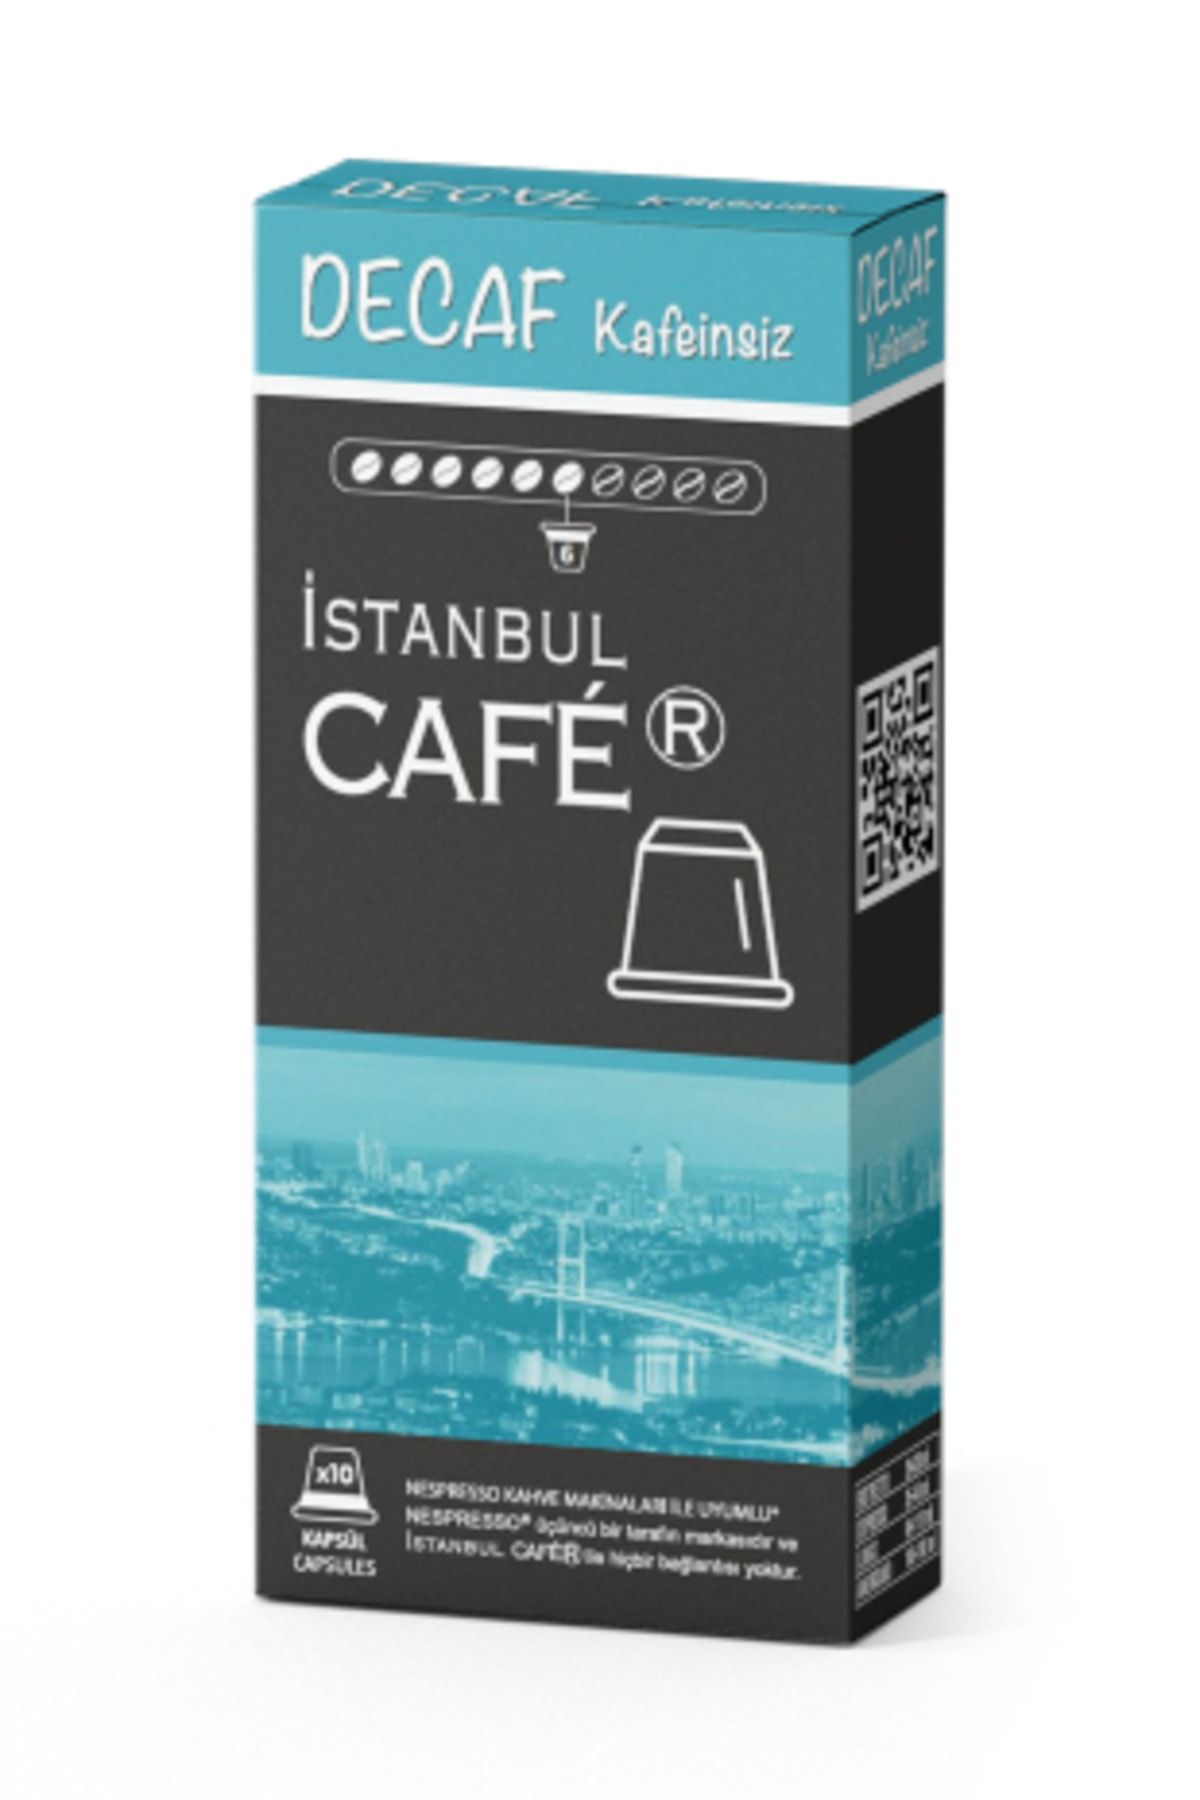 İstanbul Cafer Nespresso® Uyumlu Kapsül Kahve Decaf Kafeinsiz 10 Kapsül